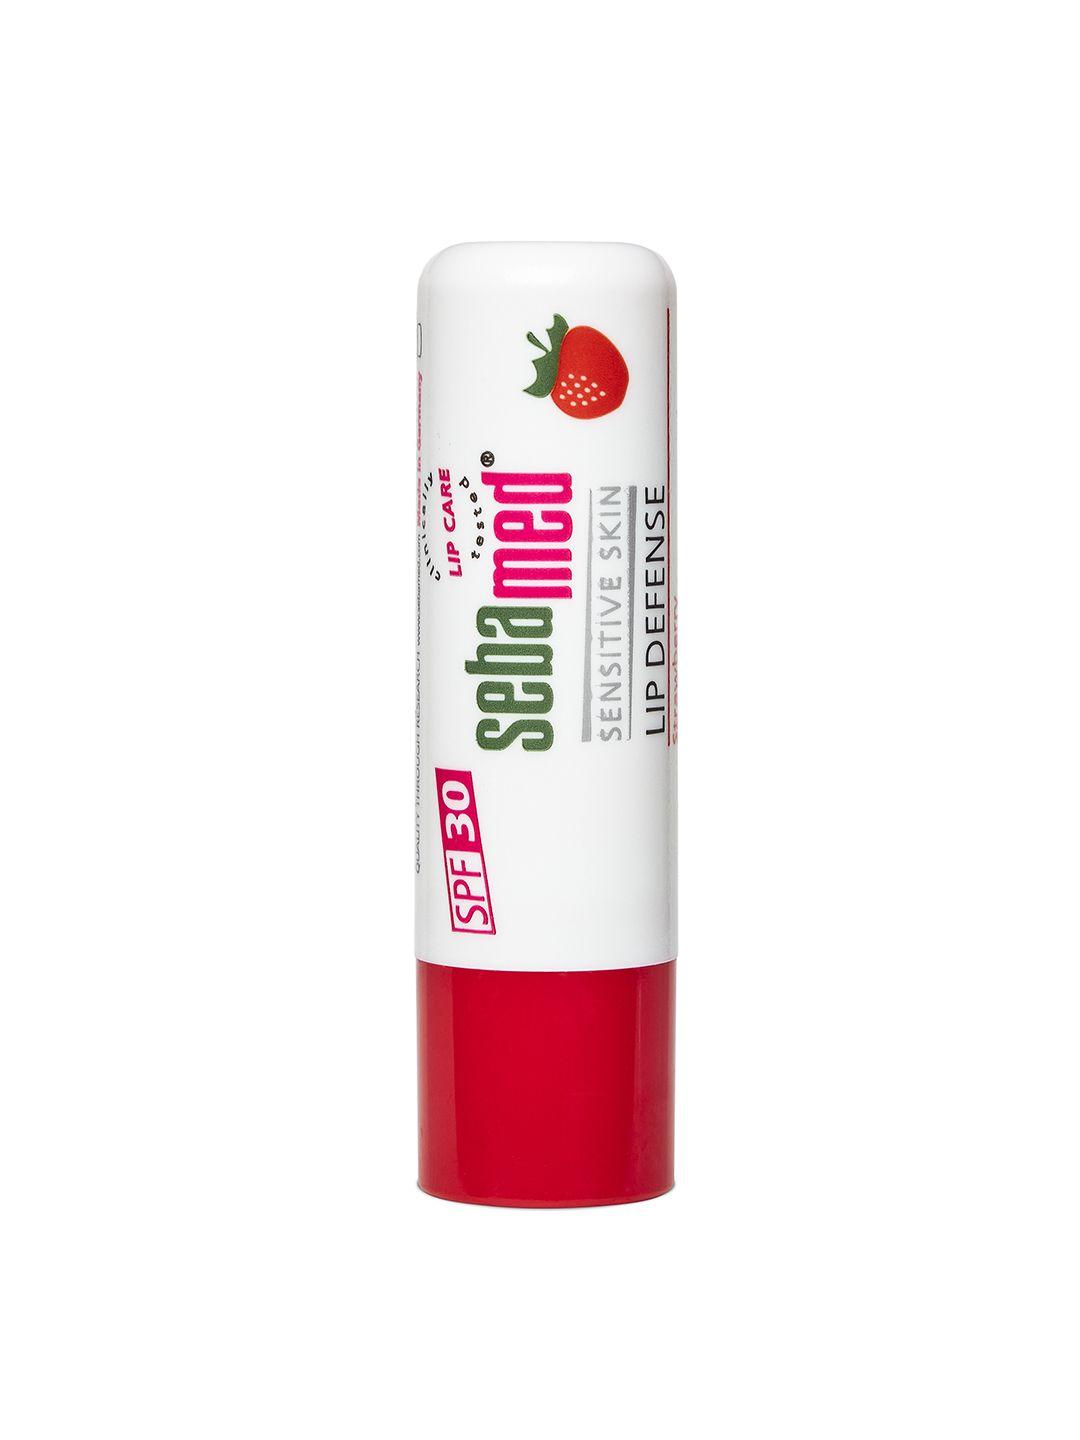 sebamed spf30 lip defense lip balm for sensitive skin 4.8g - strawberry